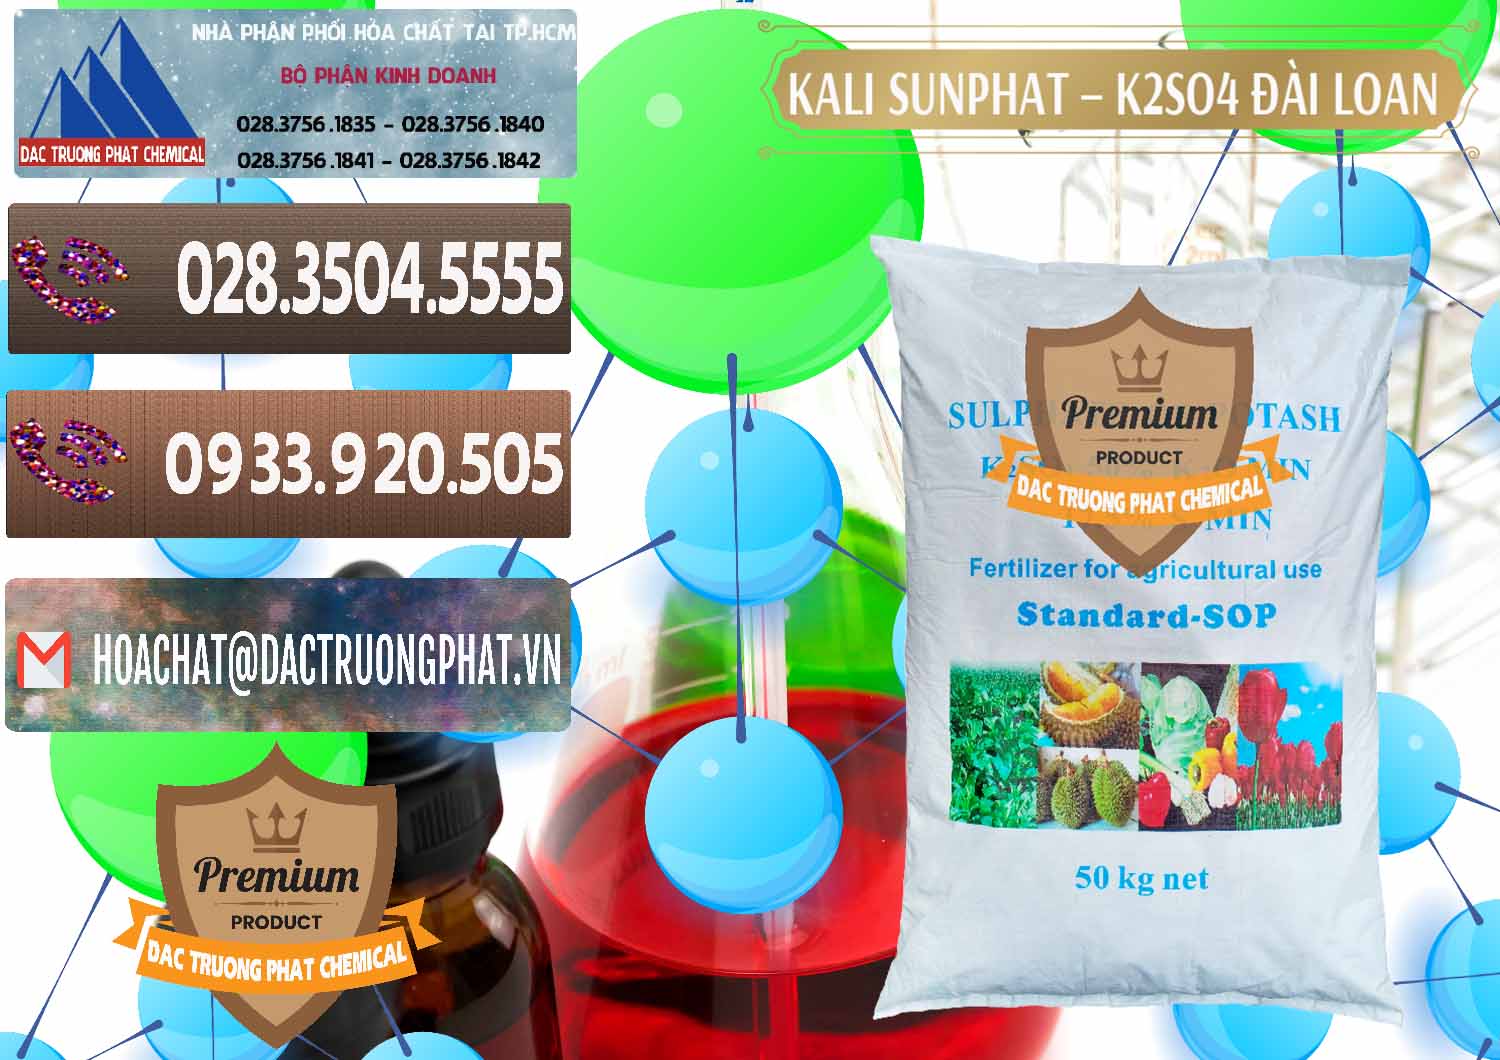 Cty kinh doanh ( bán ) Kali Sunphat – K2SO4 Đài Loan Taiwan - 0084 - Đơn vị chuyên phân phối và nhập khẩu hóa chất tại TP.HCM - hoachatviet.net